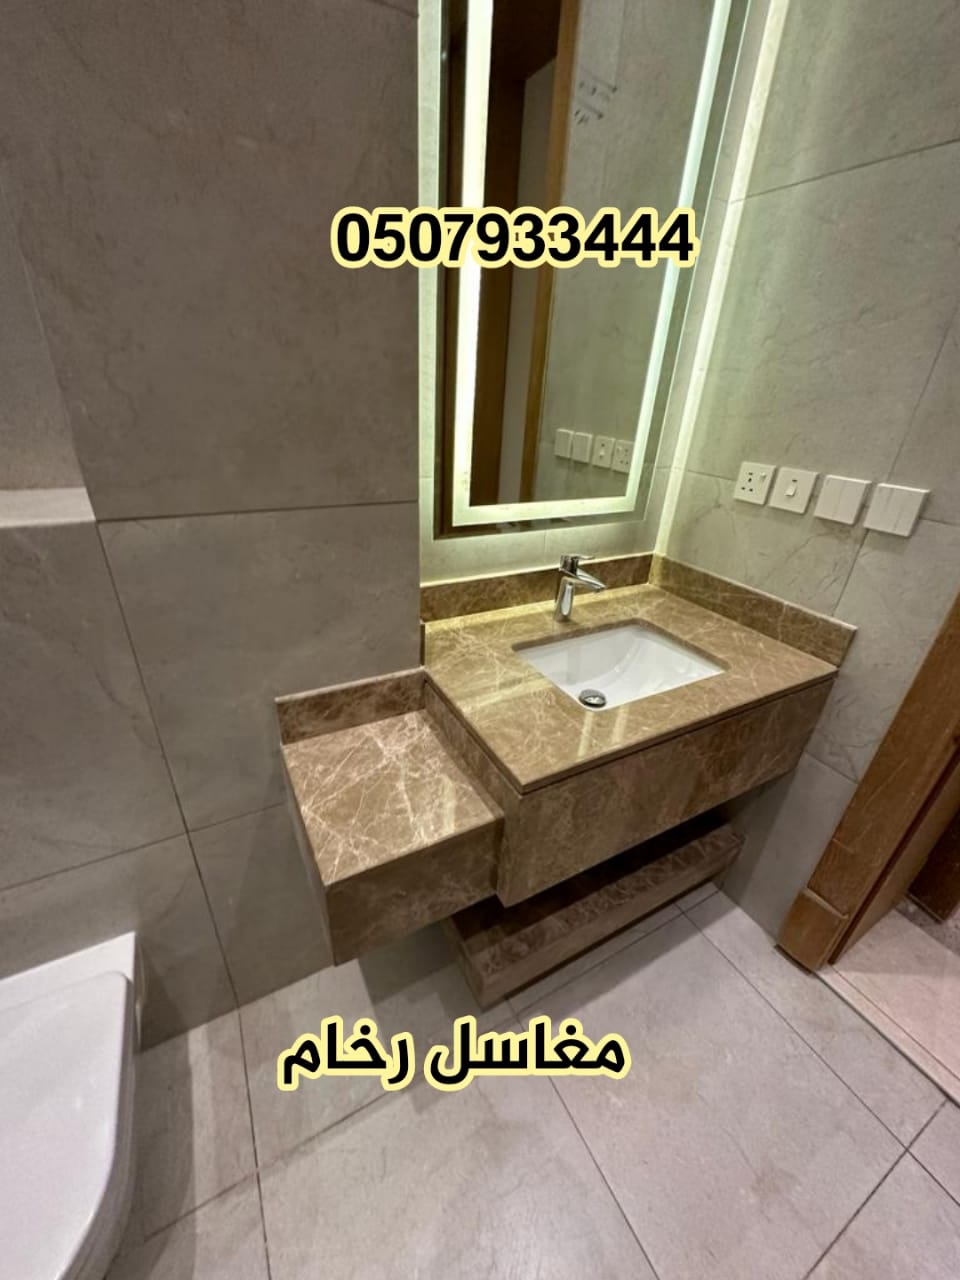           > مغاسل رخام ، بناء مغاسل رخام حمامات في الرياض